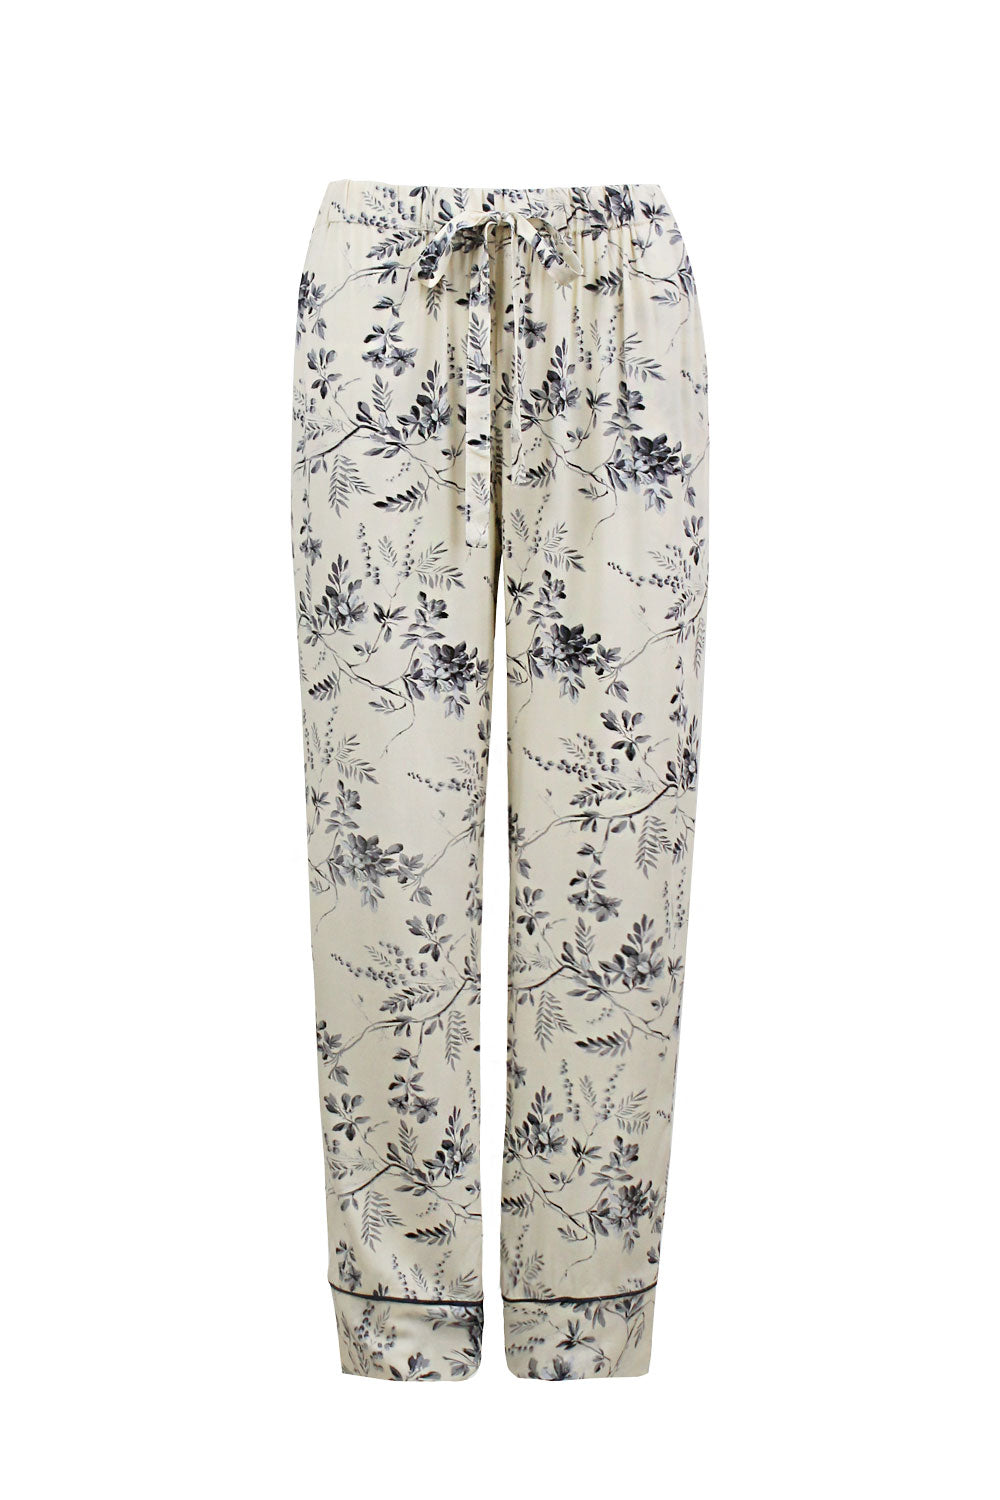 Willow Long Sleeve Pyjama Set Cream/Navy Pyjamas